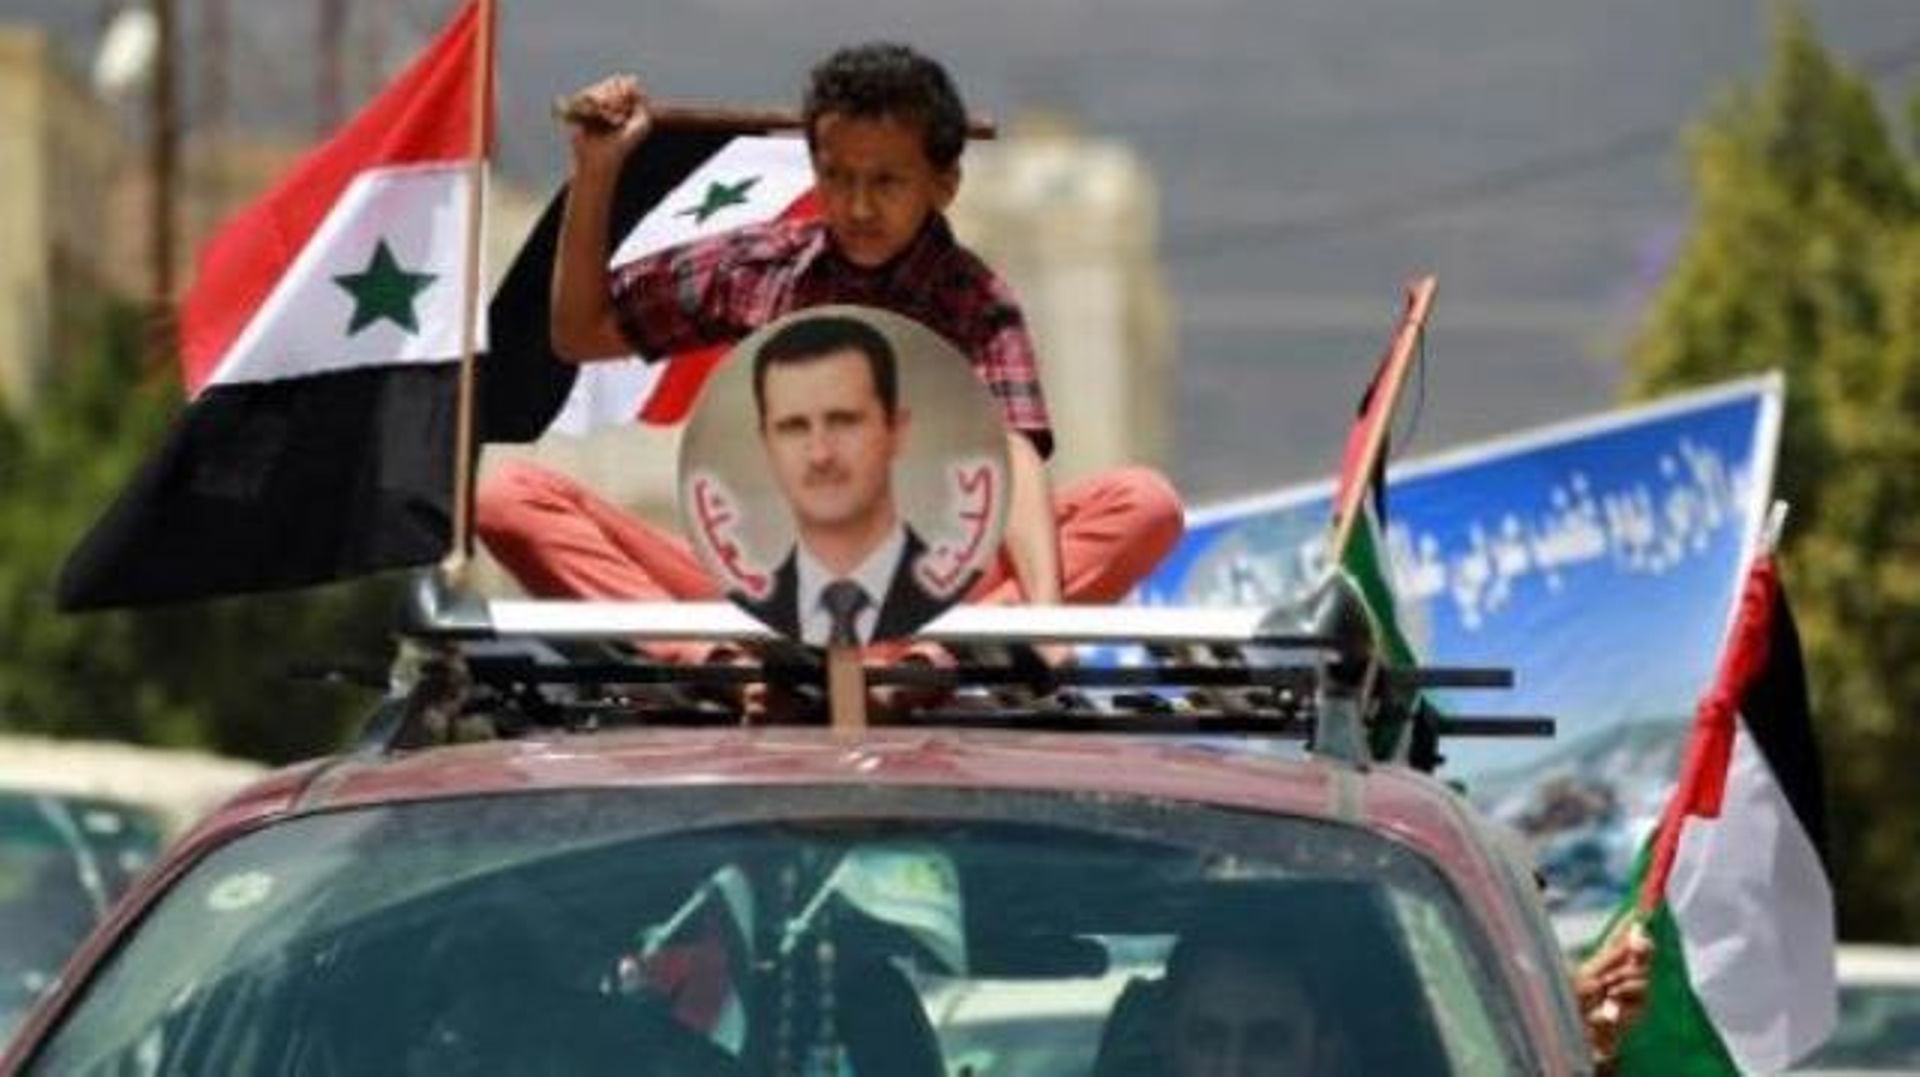 Le régime syrien prêt à coopérer dans la lutte contre le terrorisme